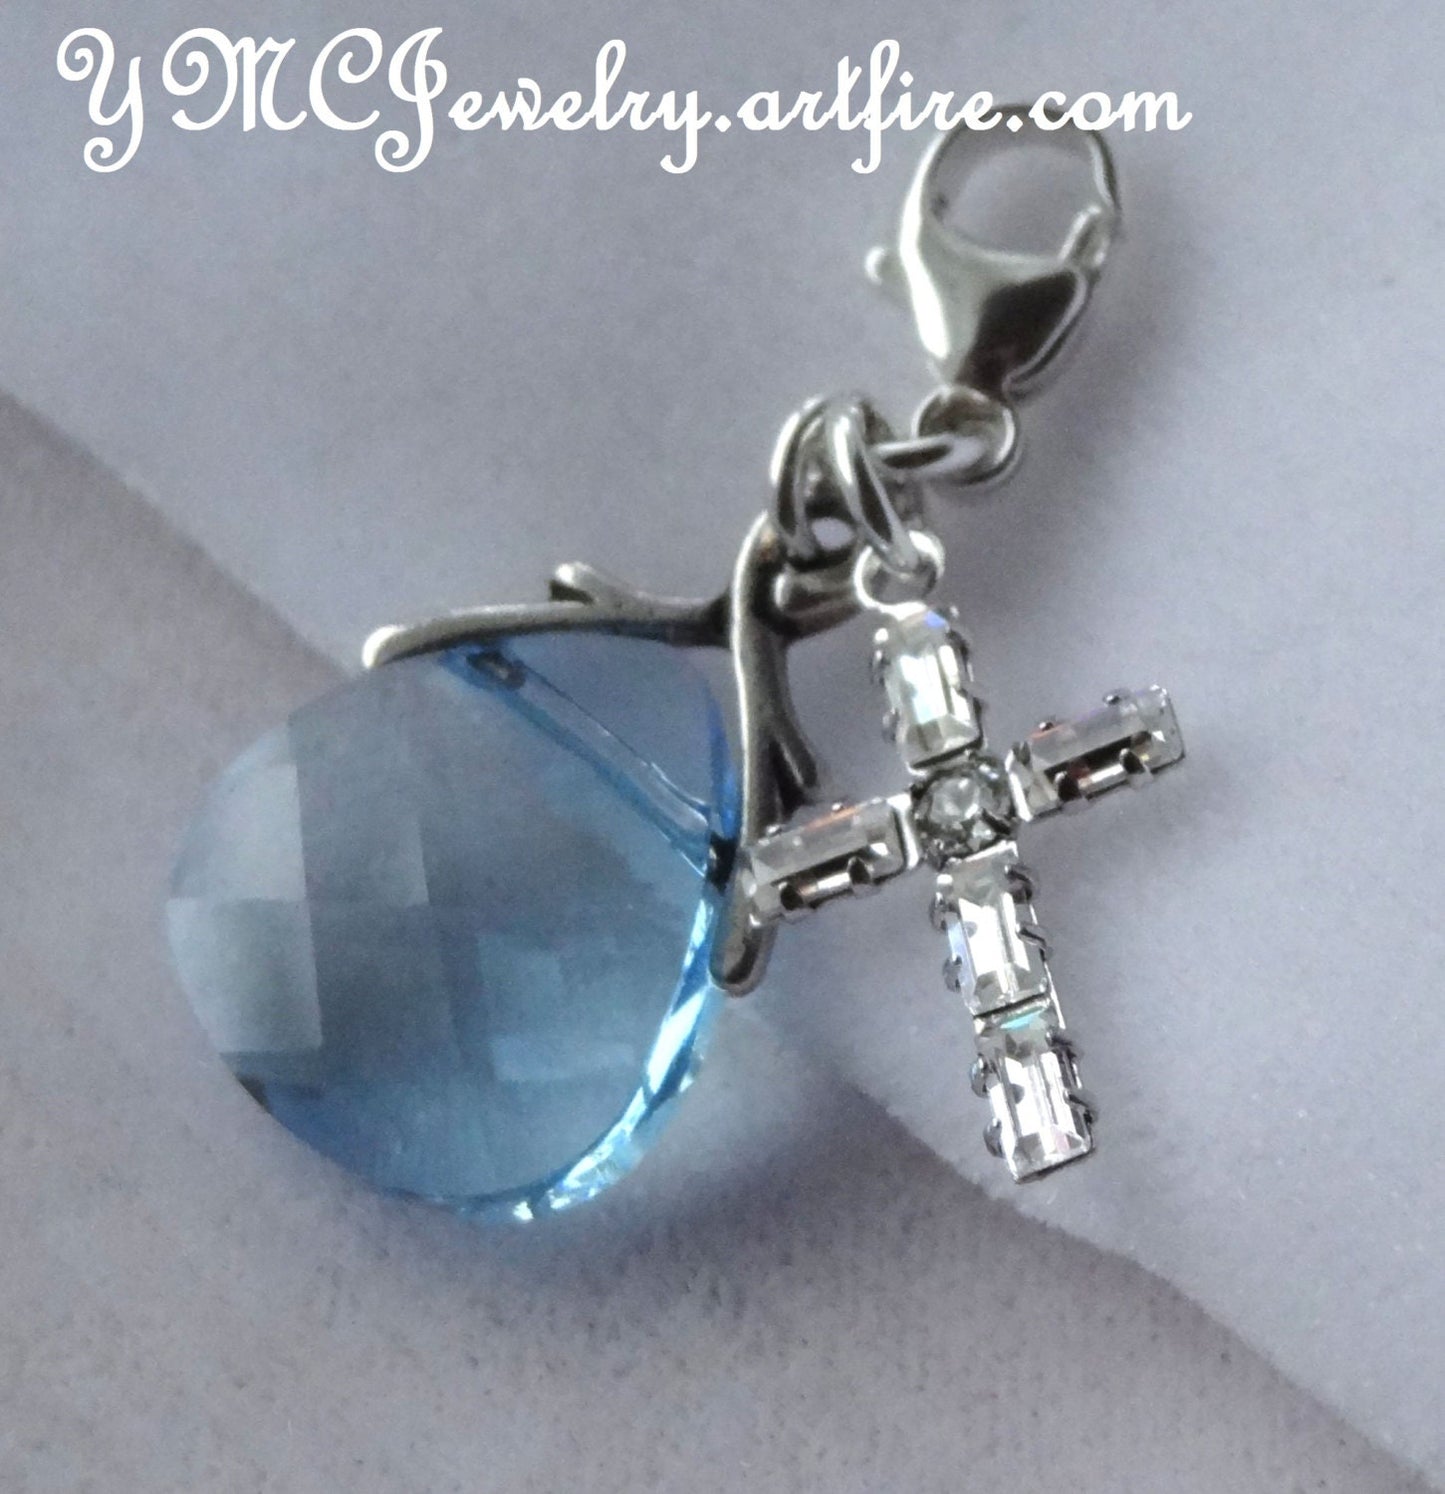 Personalized Something Blue Charm,Something Blue Catholic Bouquet Charm,Swarovski Crystal Blue Cross Charm, Blue Wedding Bouquet Charm